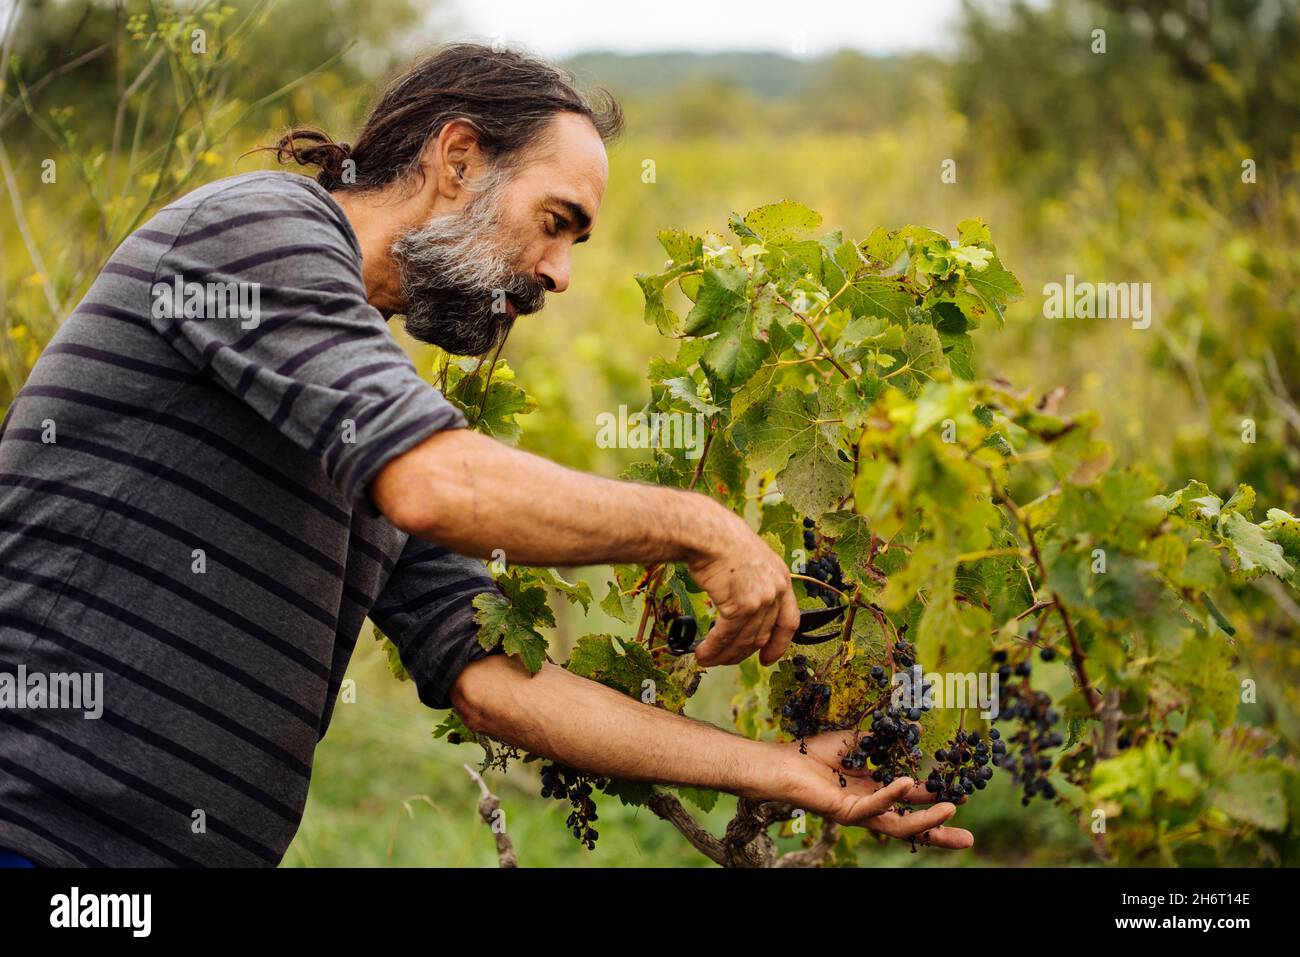 Agriculteur récoltant du raisin dans un vignoble pendant la récolte du raisin. Banque D'Images